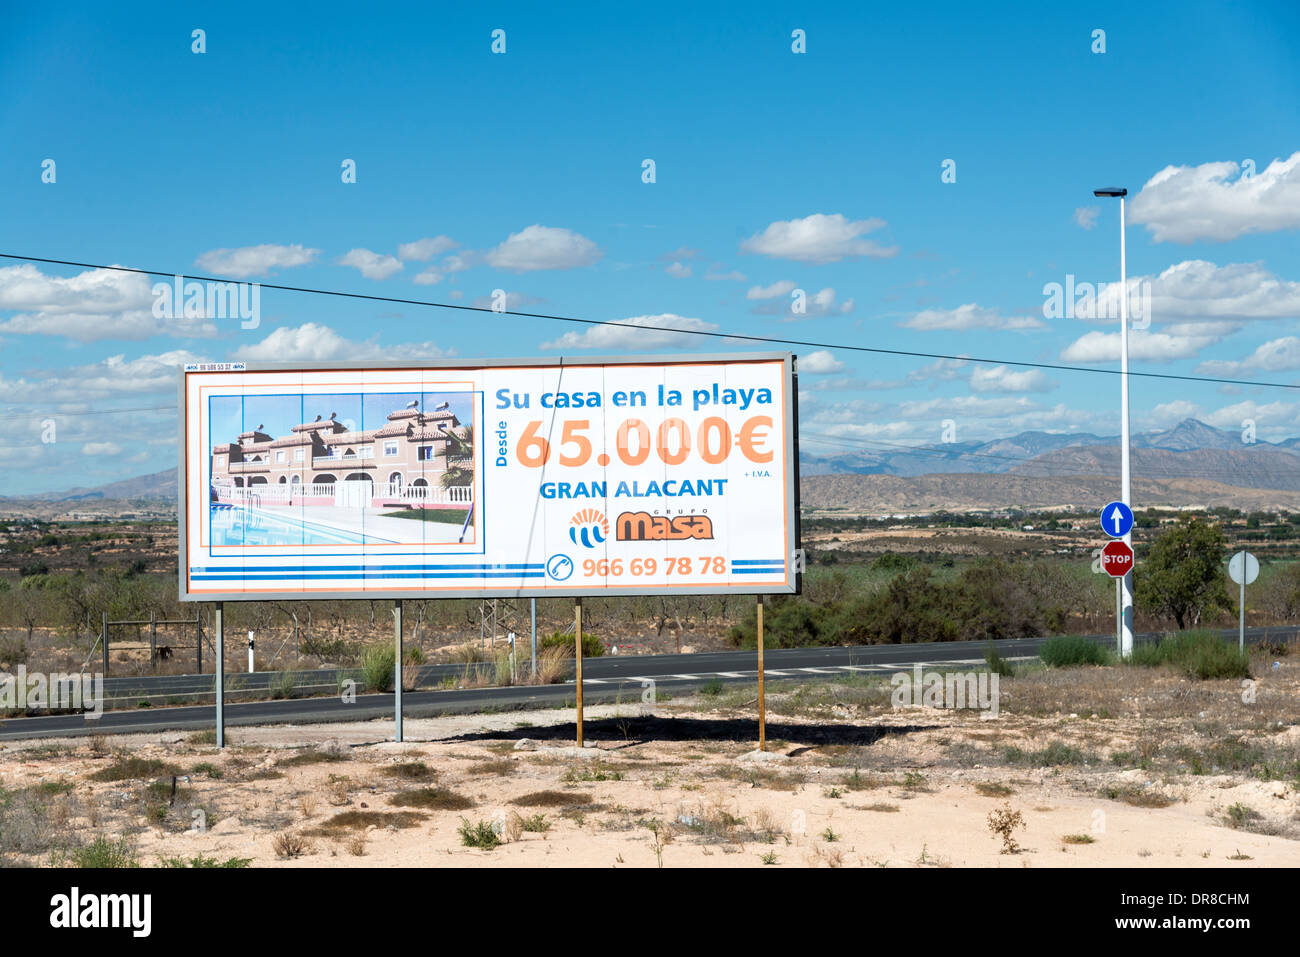 Am Straßenrand Plakatwerbung neue Immobilienentwicklung in Stadt von Gran Alacant in der Nähe von Alicante, Costa Blanca, Spanien Stockfoto